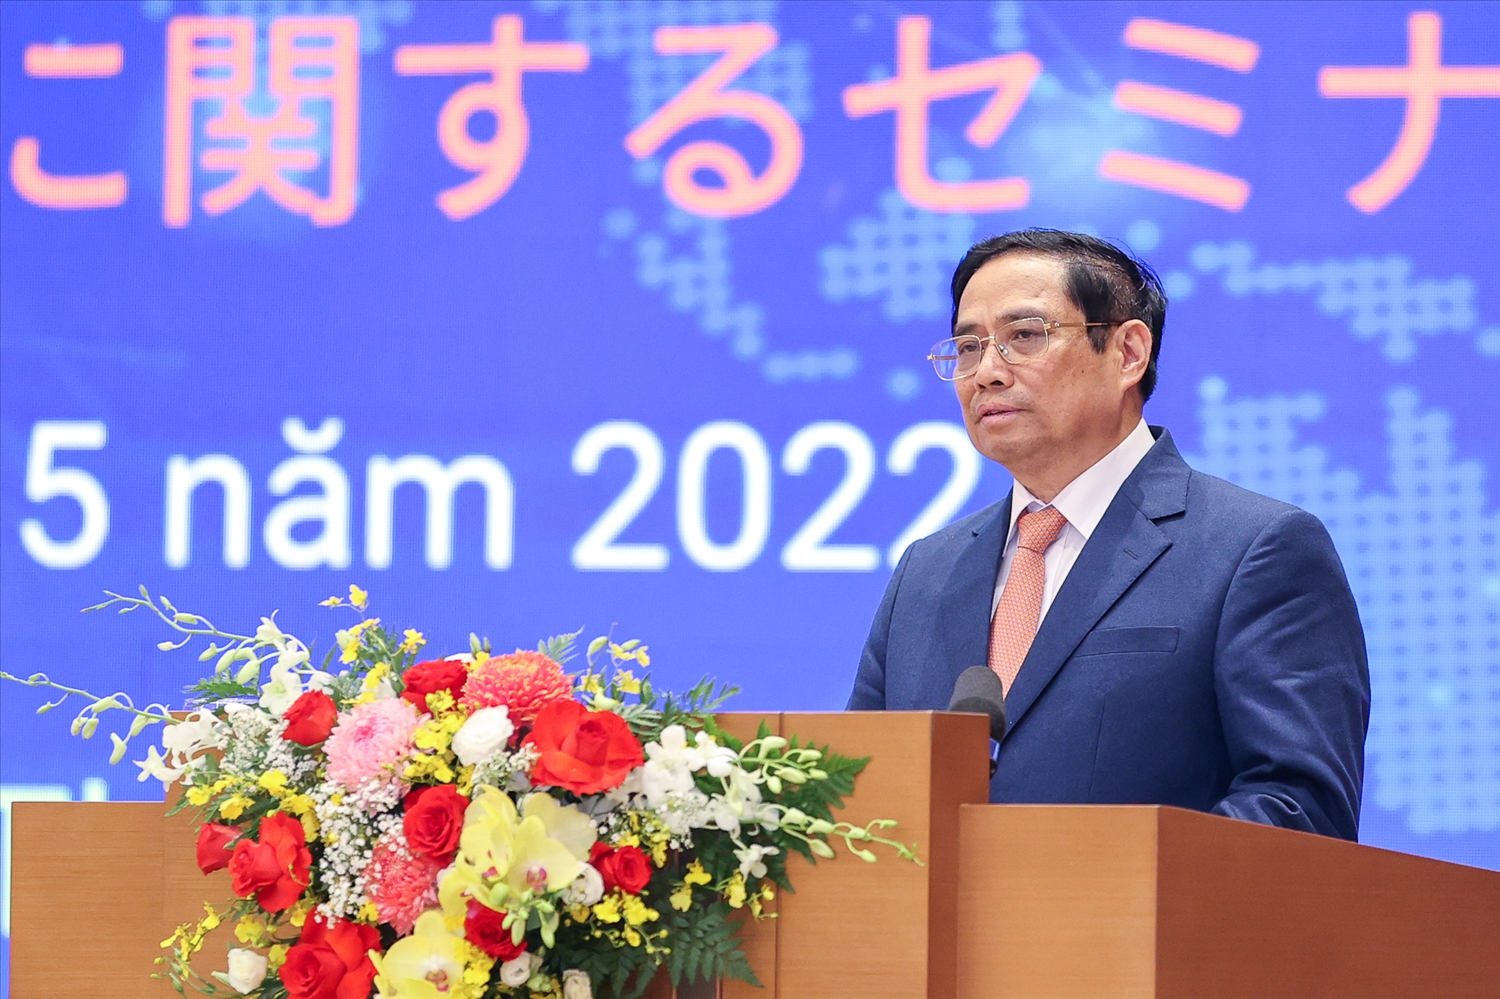 Thủ tướng Phạm Minh Chính: Việt Nam mong muốn tiếp tục nhận được sự phối hợp chặt chẽ, sự ủng hộ, hỗ trợ của Nhật Bản trong quá trình đẩy mạnh đổi mới công nghệ, chuyển đổi số và đa dạng hóa chuỗi cung ứng. Ảnh VGP/Nhật Bắc